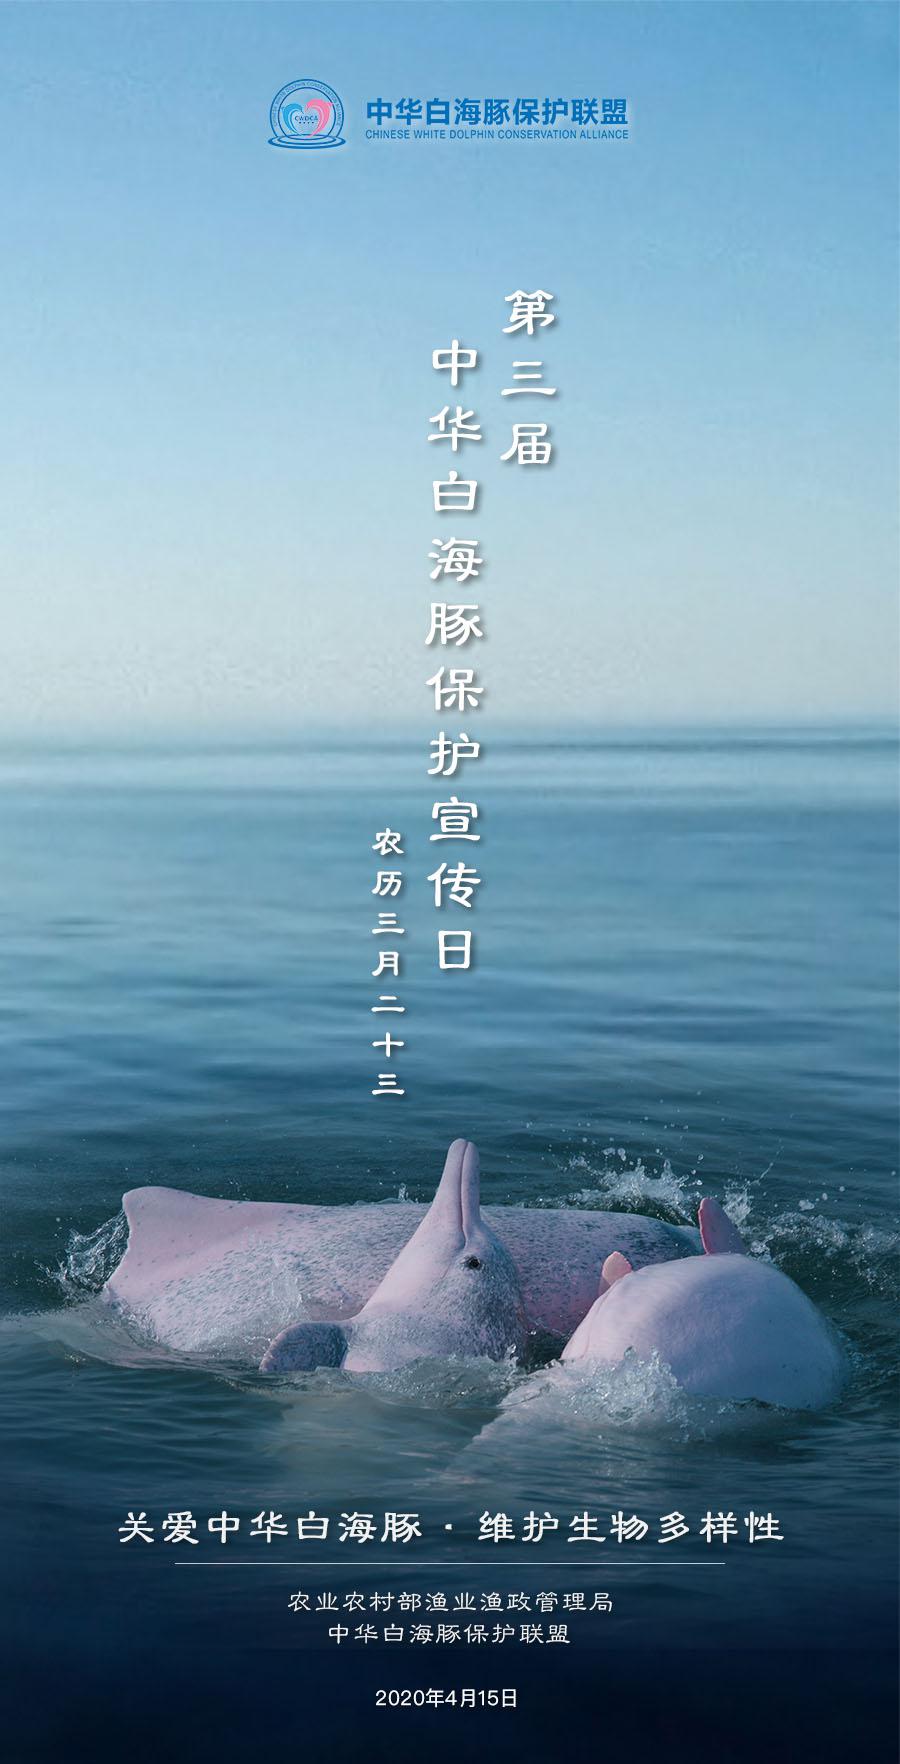 第三届中华白海豚保护宣传日活动圆满举办